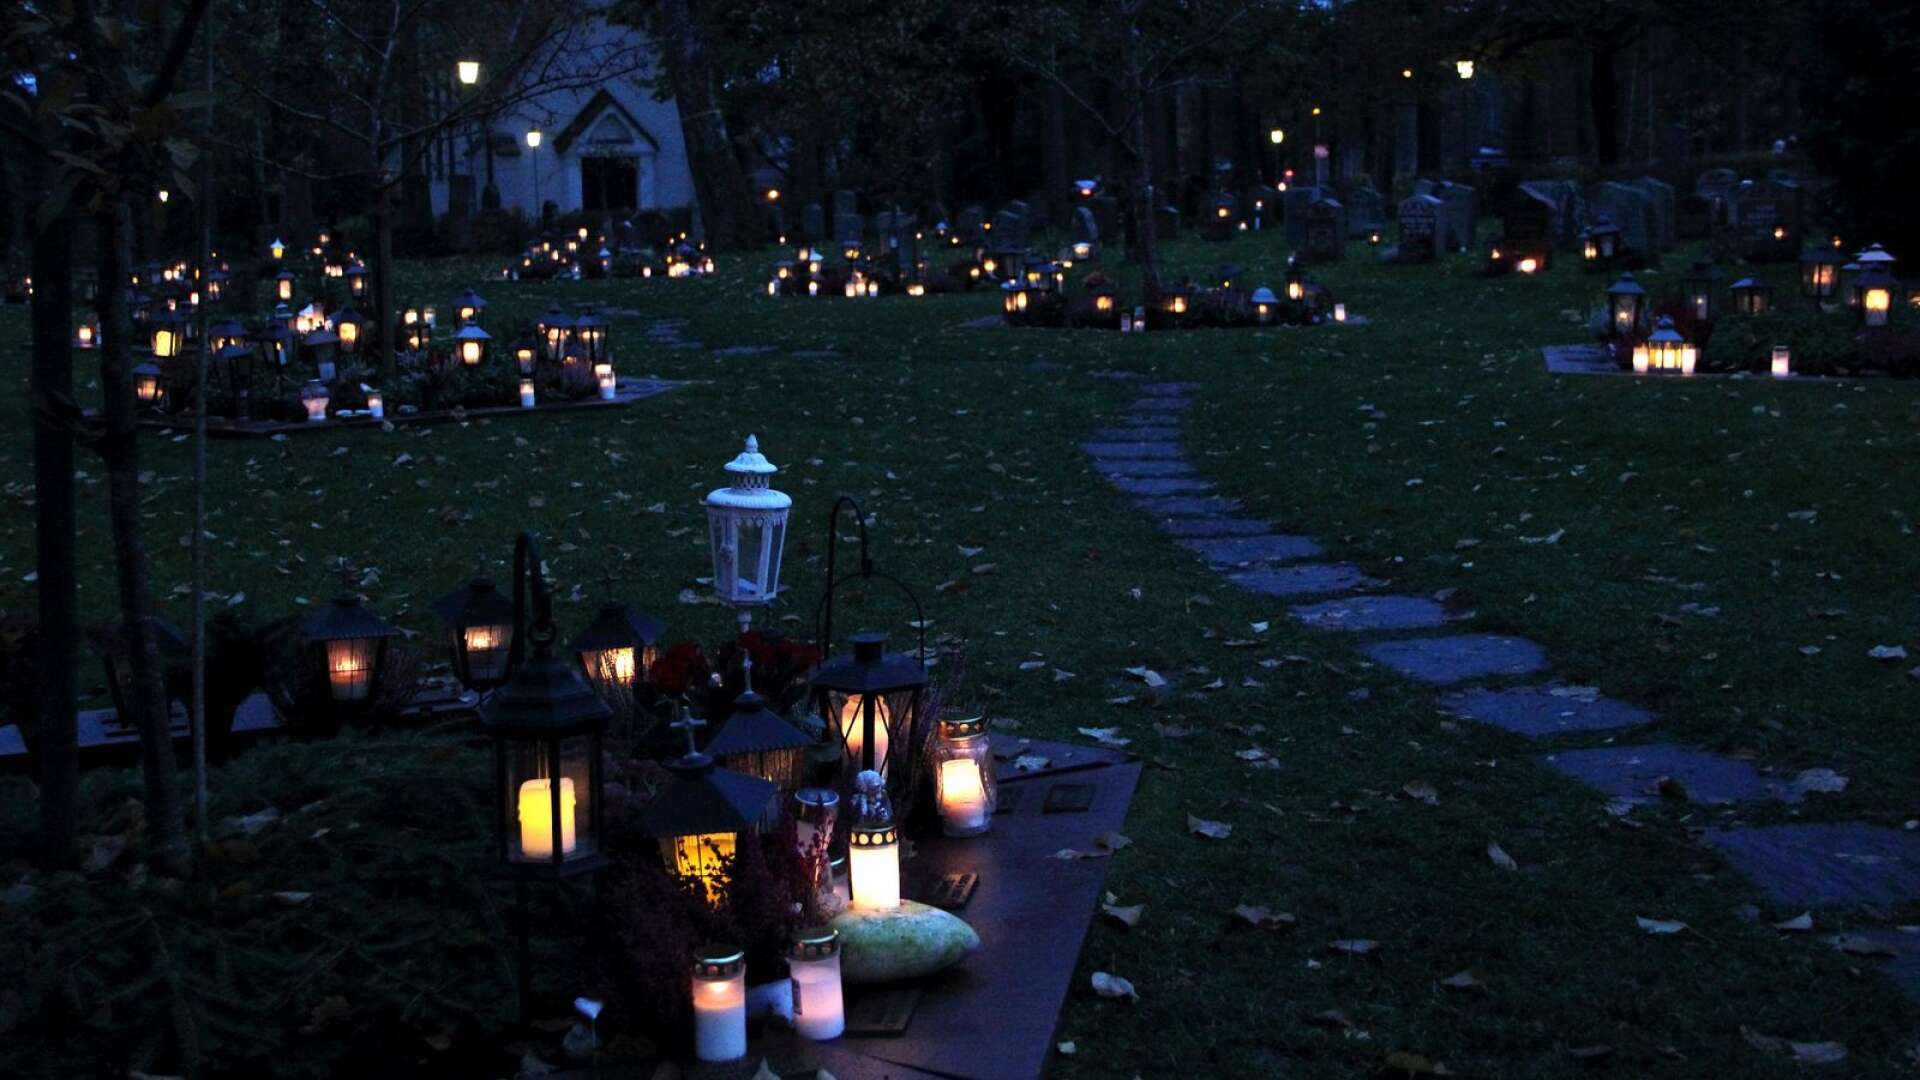 De som i stället för att tända ljus på kyrkogården väljer att tända inne i kyrkan, hänvisas i helgen till Fredens kapell, då Degerfors kyrka endast är öppen för inbjudna till minnesgudstjänst.